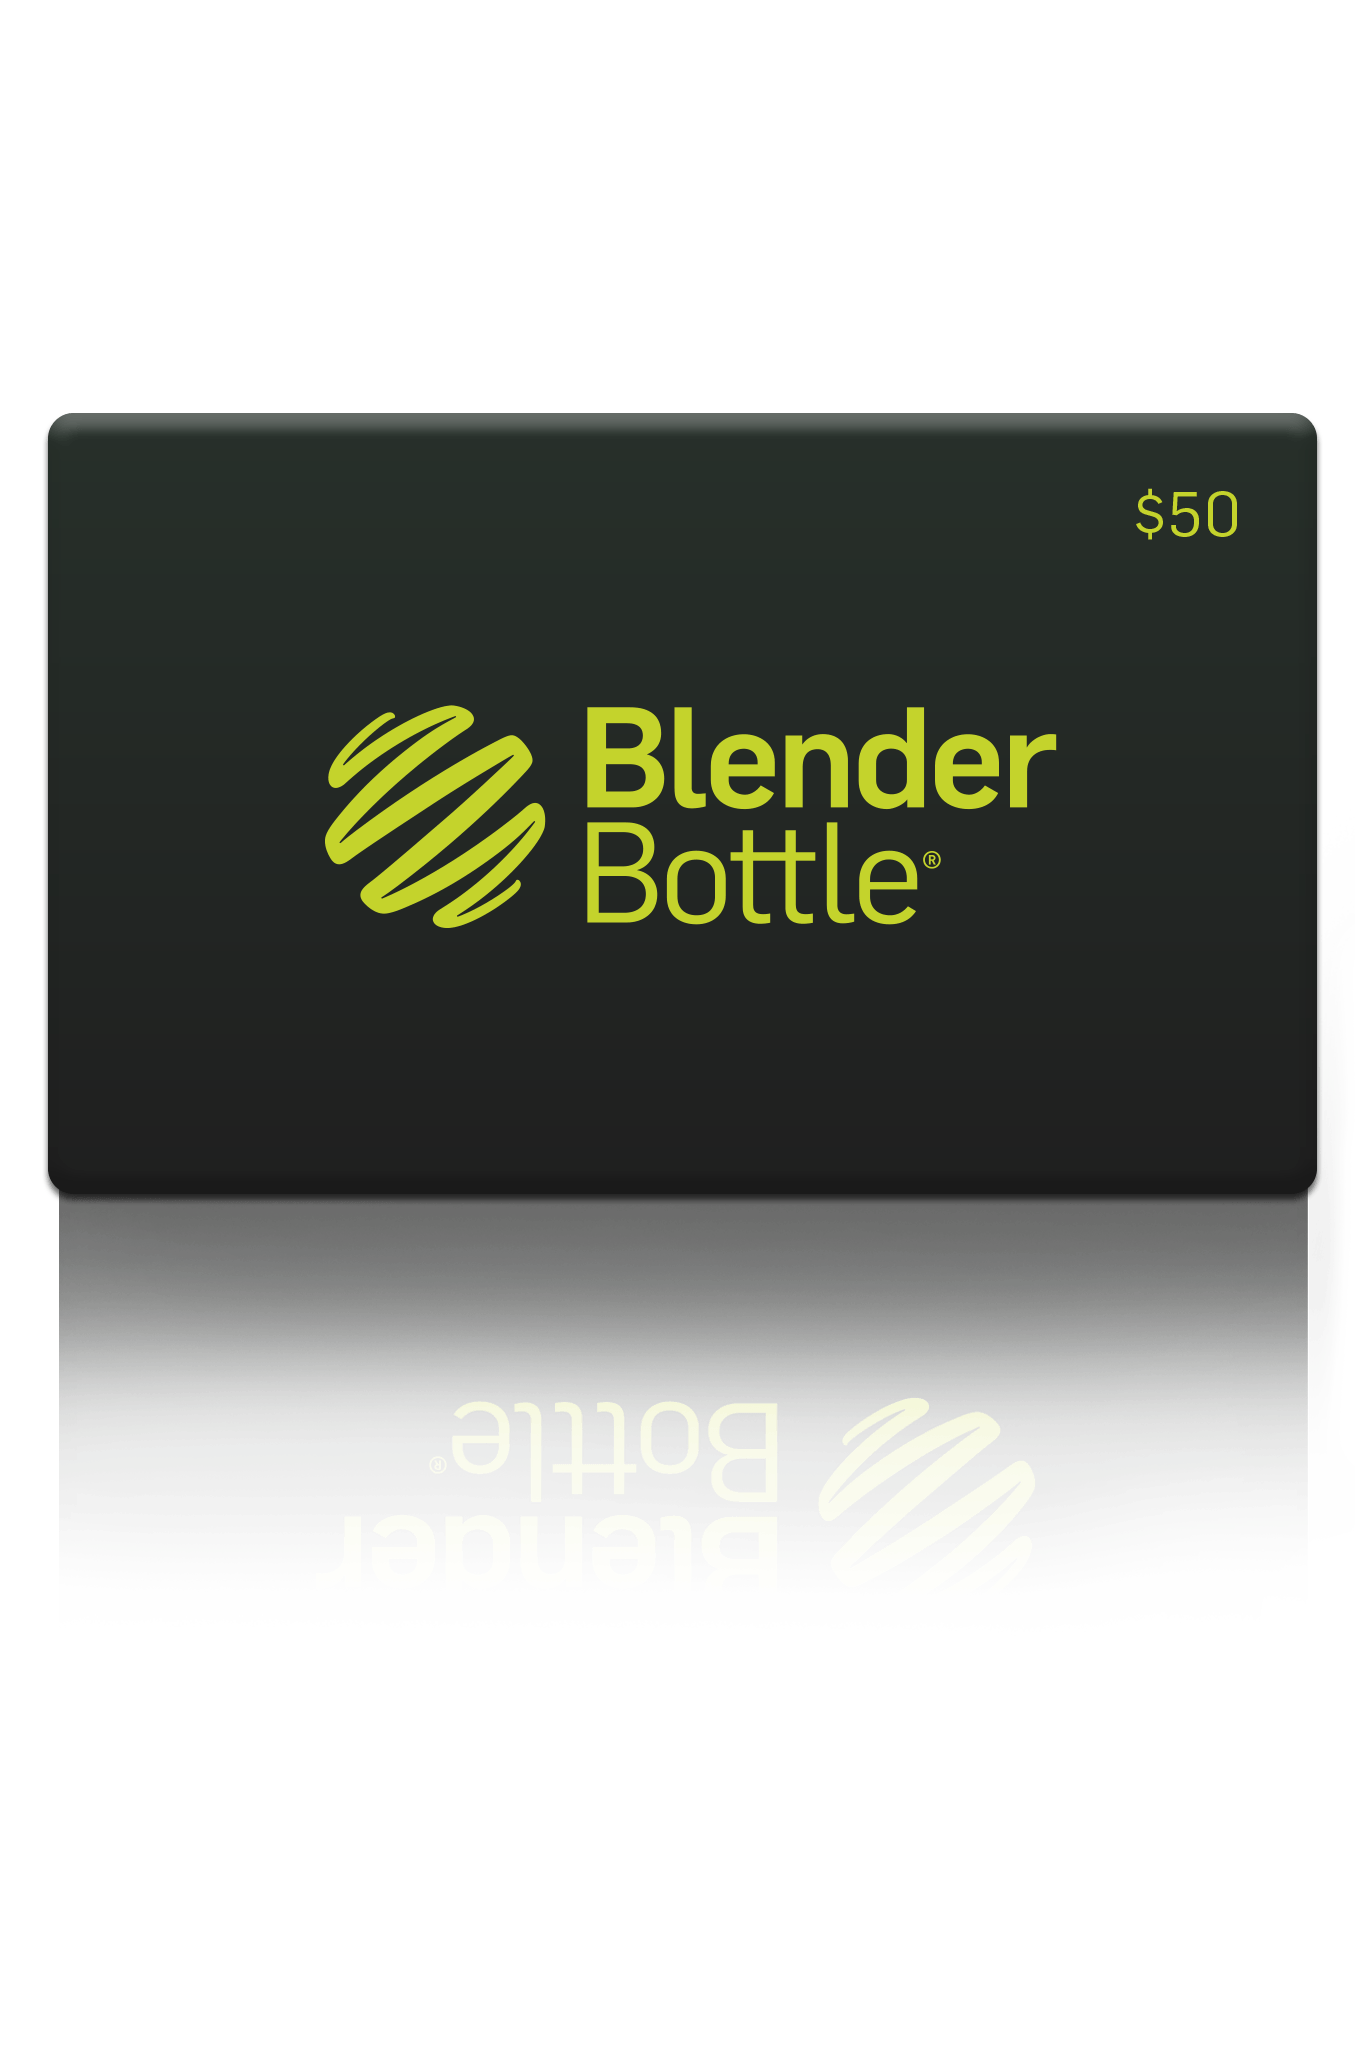 BlenderBottle - BlenderBottle Gift Card - $50.00